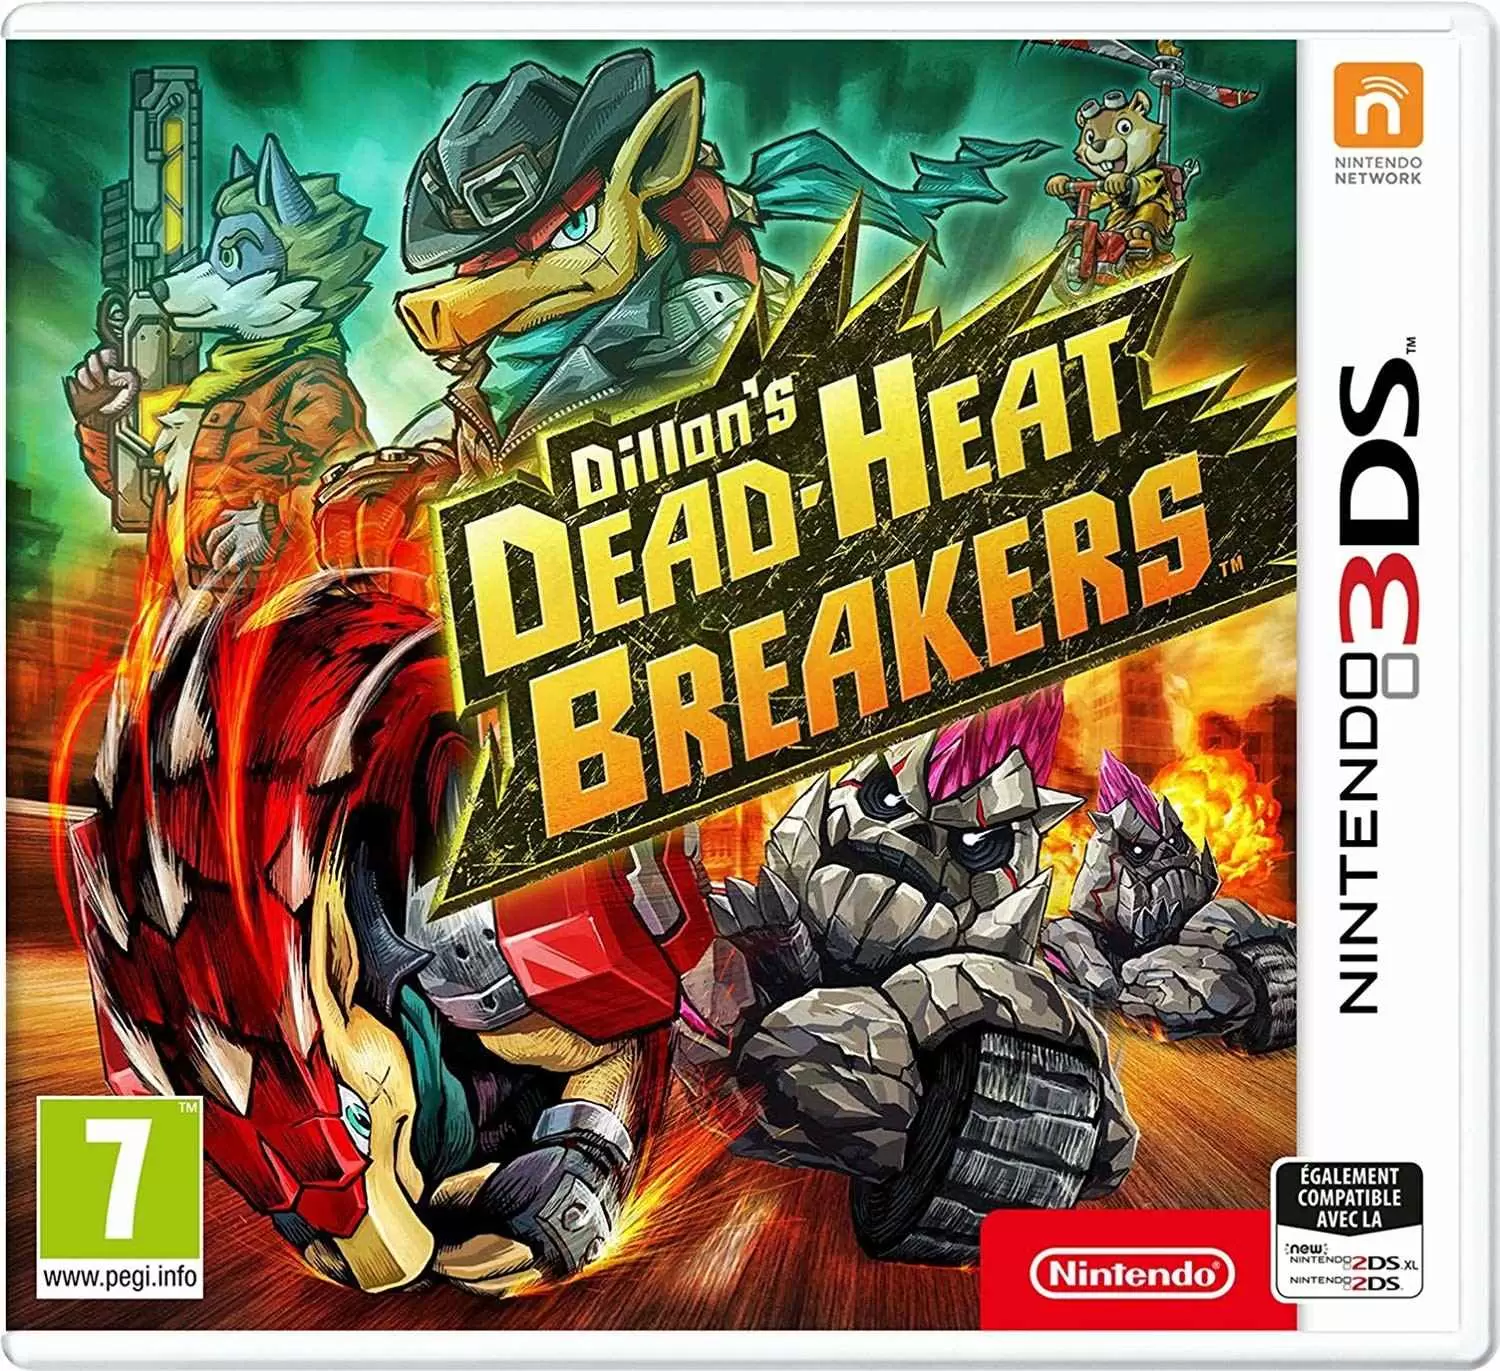 Nintendo 2DS / 3DS Games - Dillons Dead-Heat Breakers